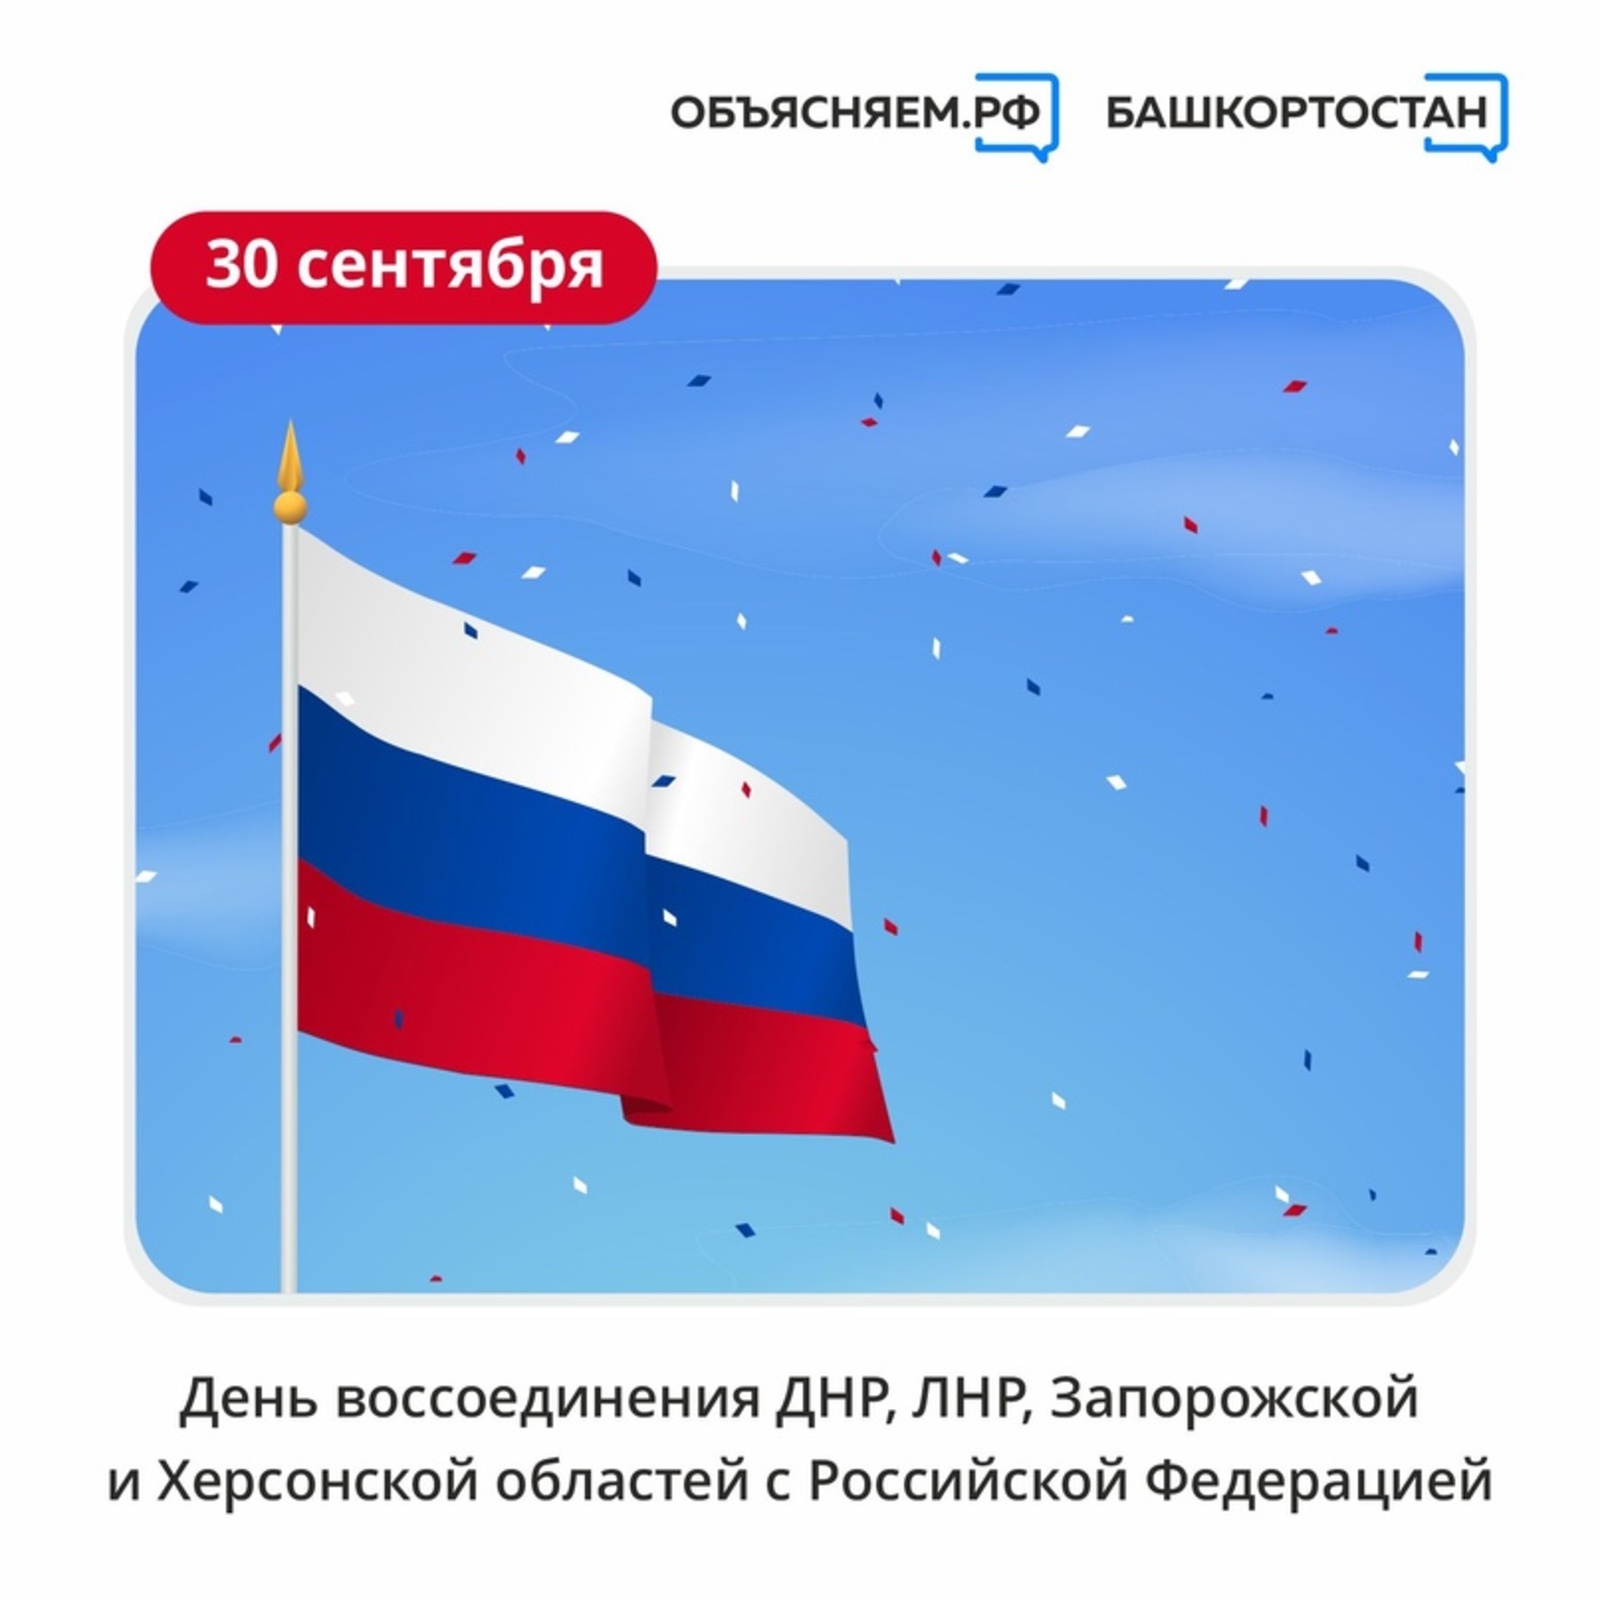 30 сентября 2022 года войдет в новейшую историю как день принятия в Российскую Федерацию новых регионов.